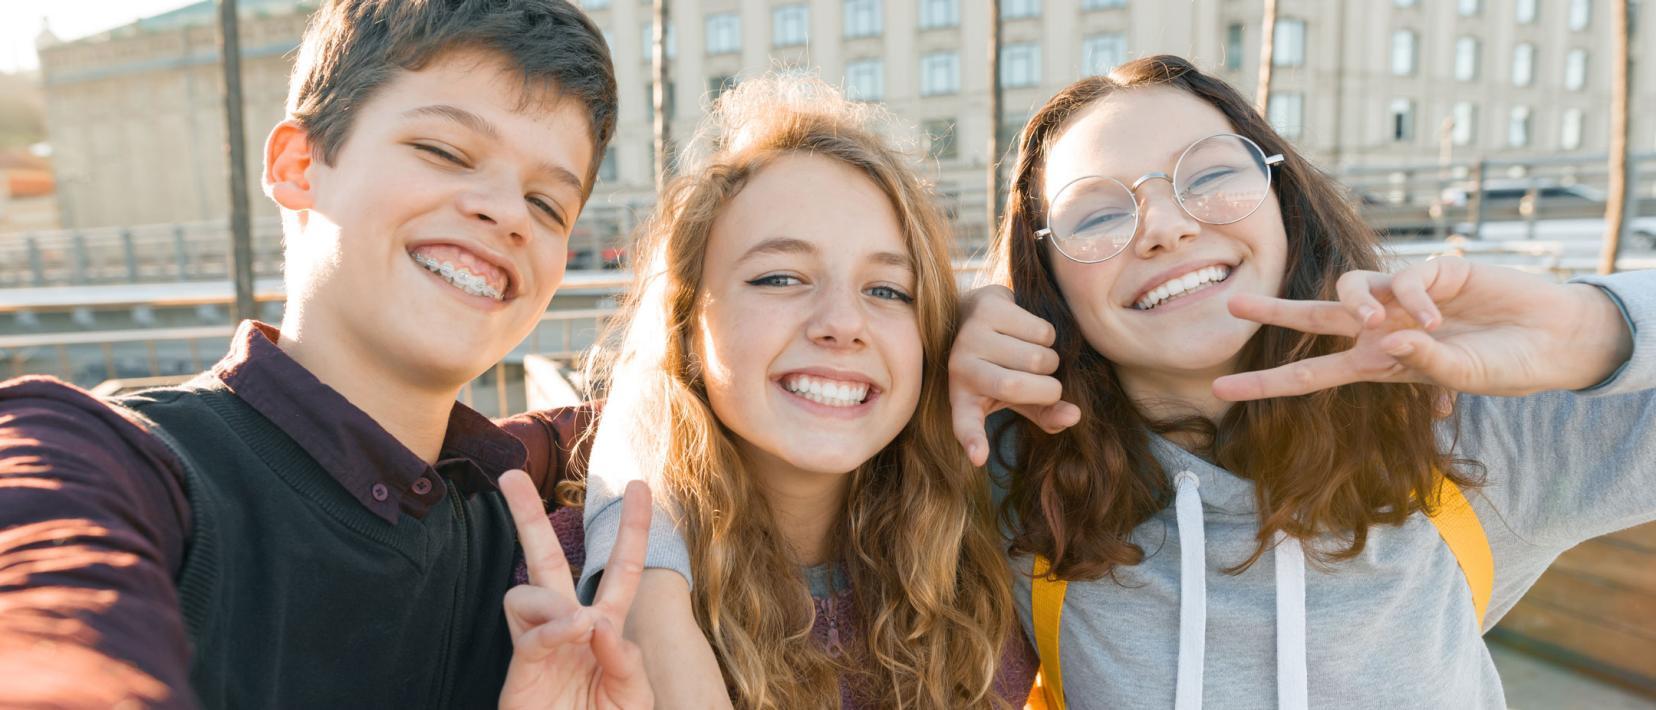 Ein Junge und zwei Mädchen im Teenie-Alter machen lachend und Victory-Zeichen zeigend in der Stadt ein Selfie von sich.